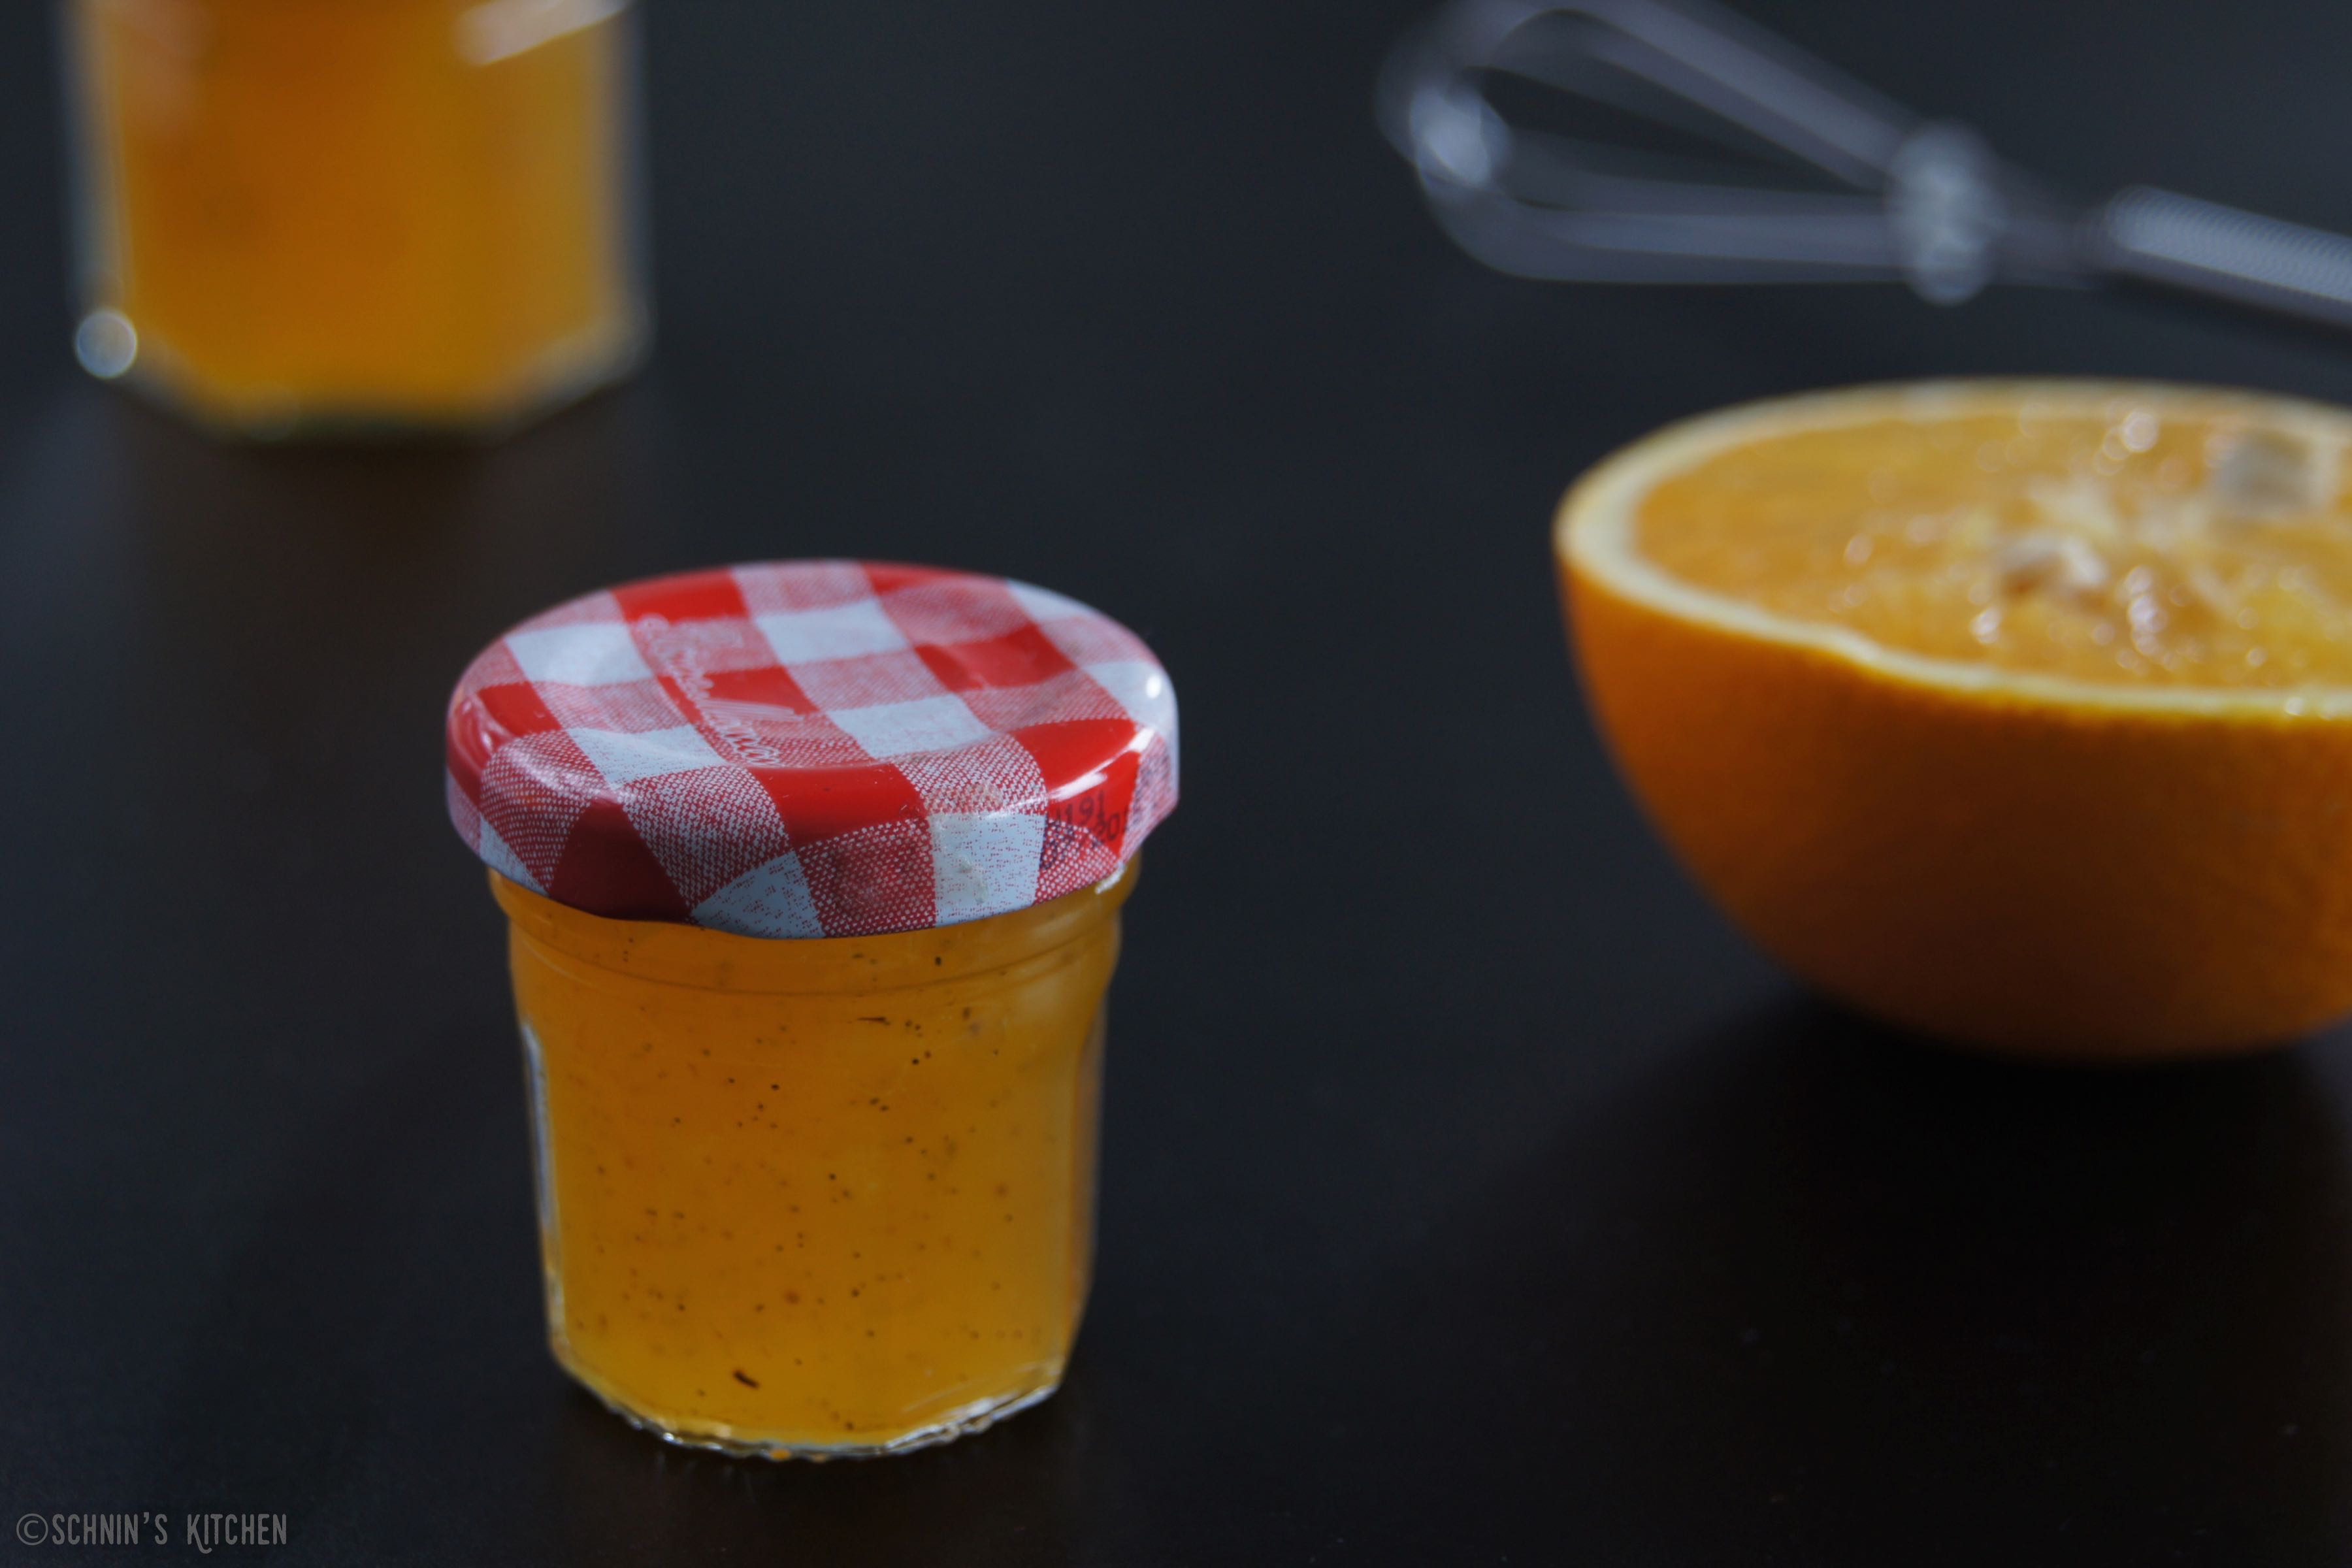 Schnin's Kitchen: Orangen-Vanille-Gelee